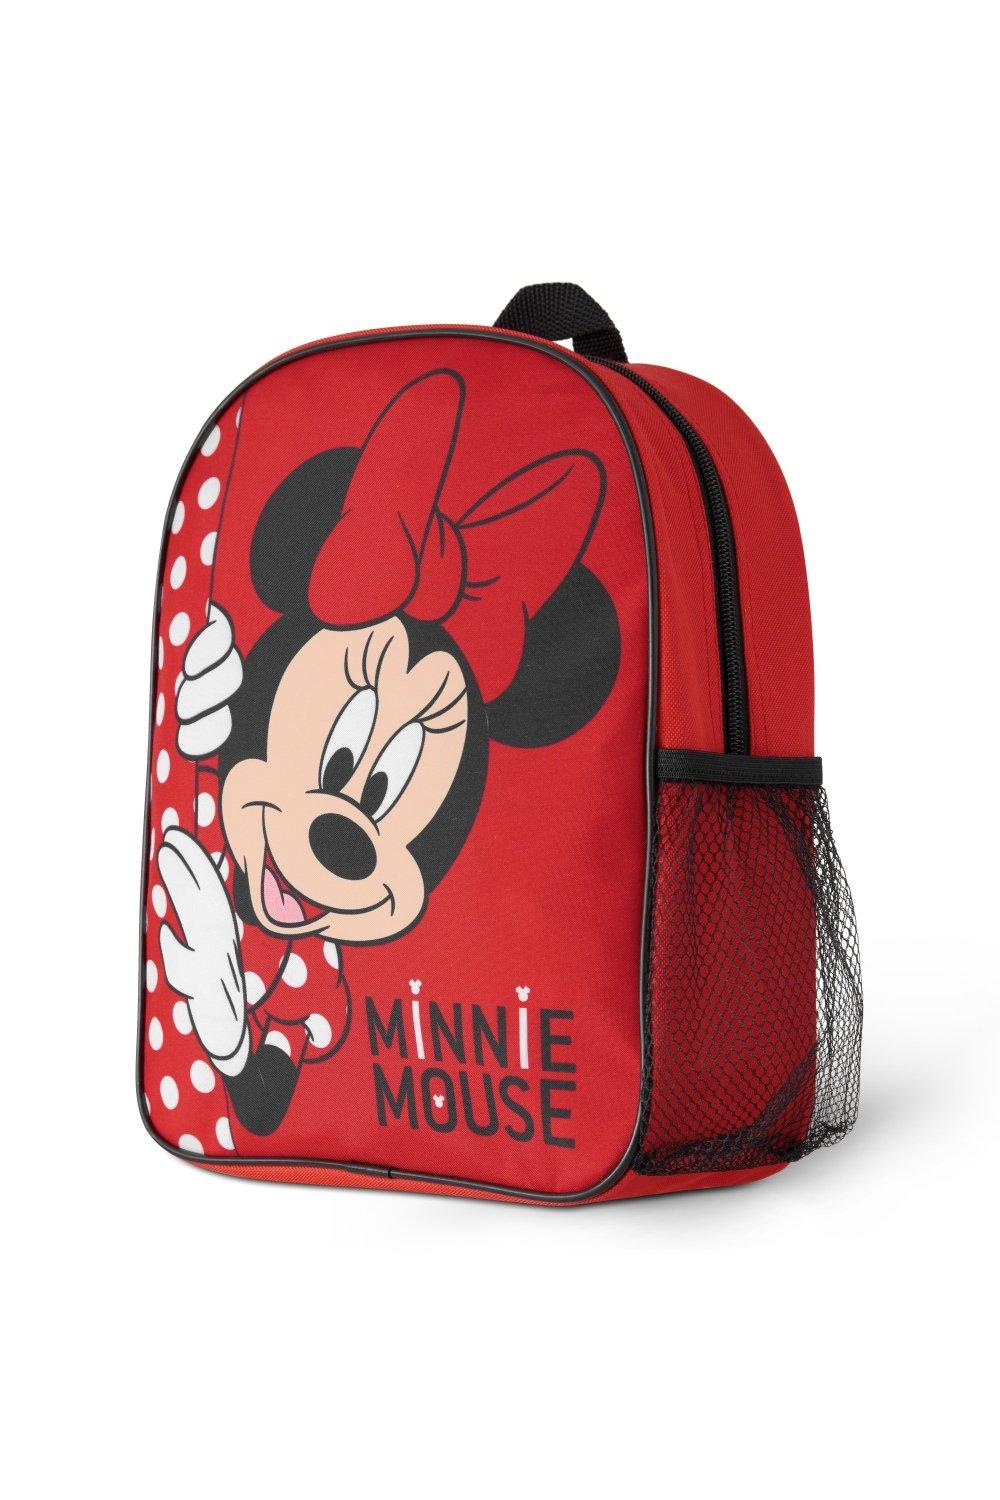 Рюкзак для девочек Минни Маус Disney, красный рюкзак минни маус mickey mouse белый 4